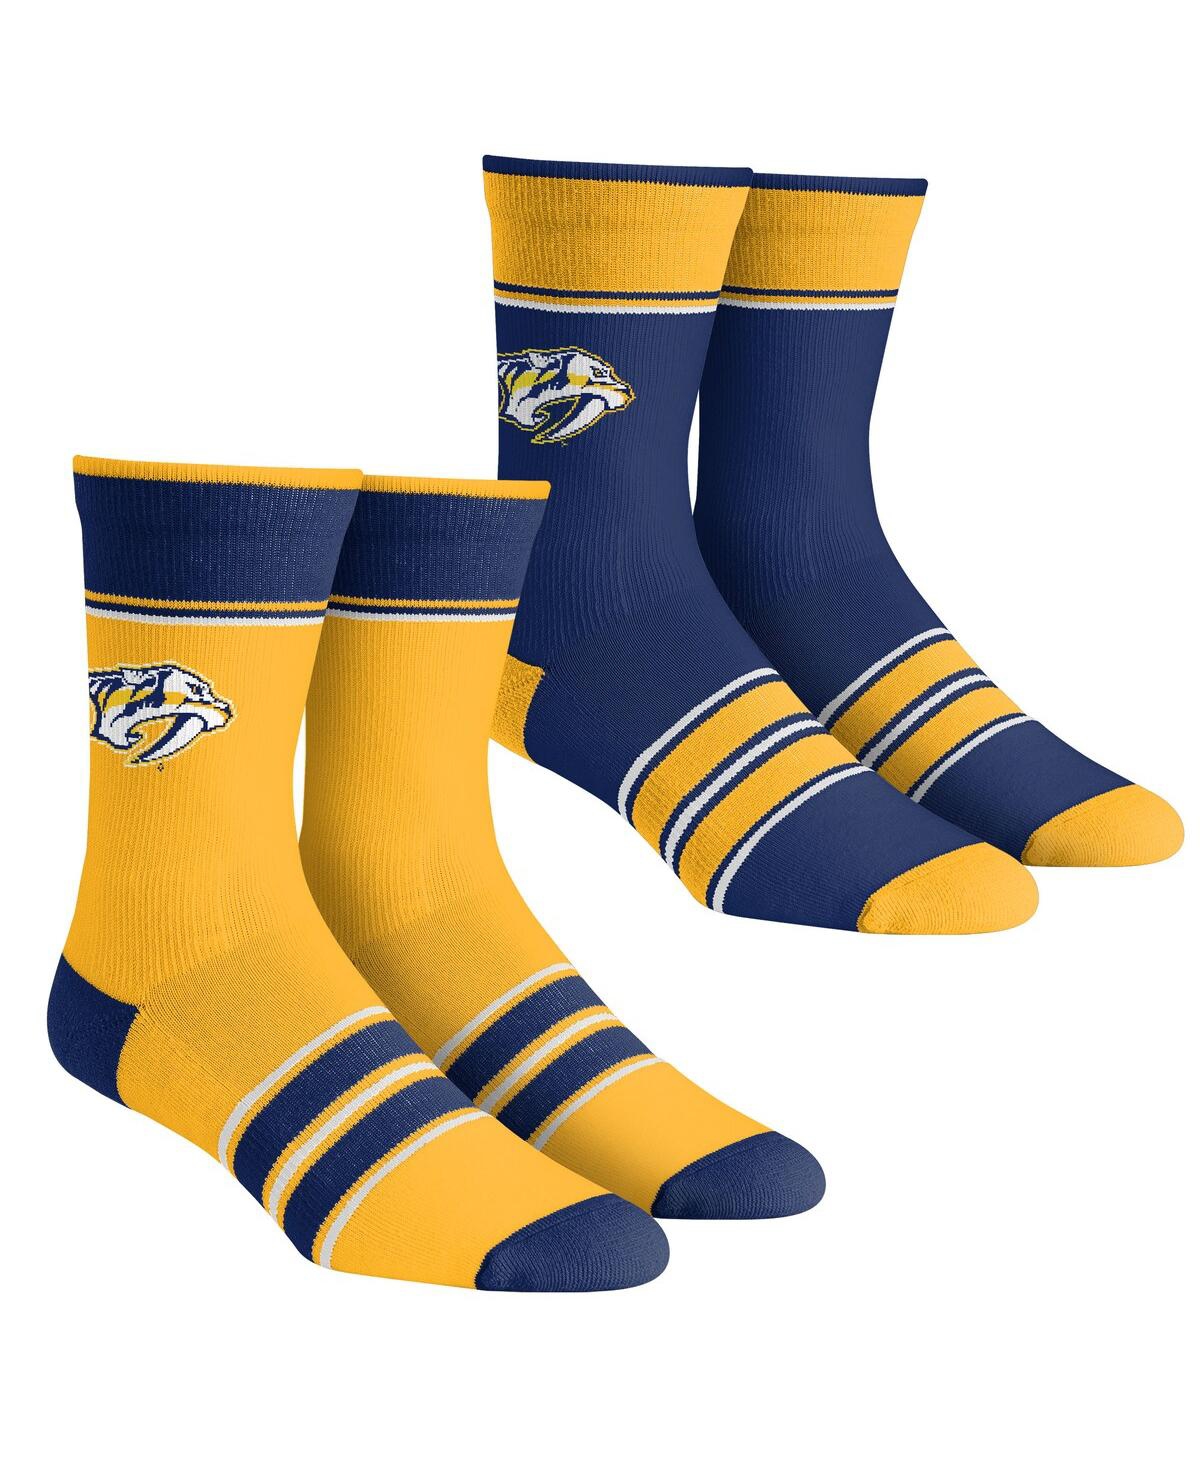 Men's and Women's Rock 'Em Socks Nashville Predators Multi-Stripe 2-Pack Team Crew Sock Set - Yellow, Blue